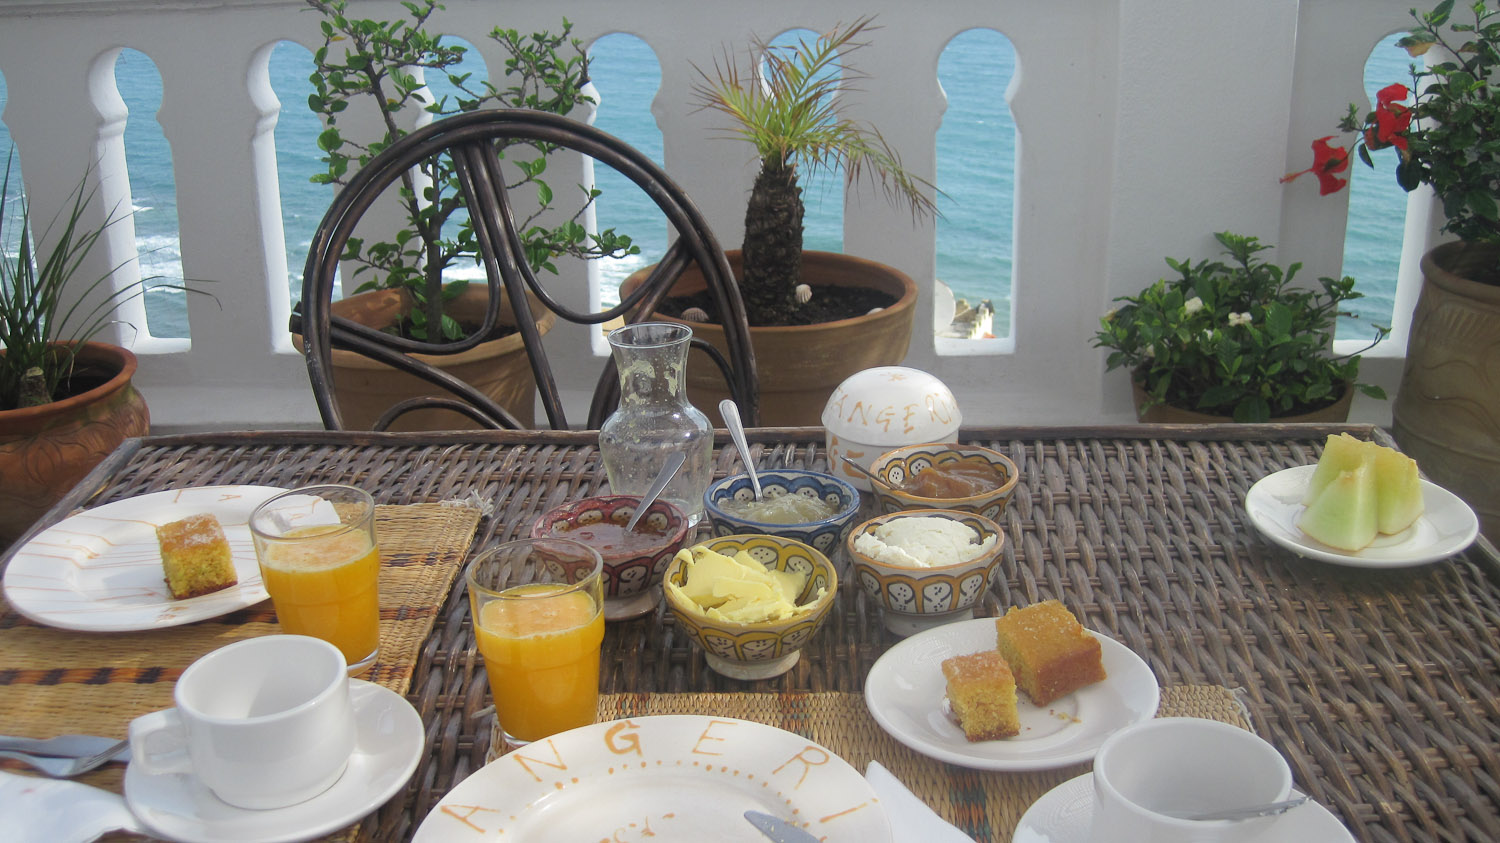 Desayunando junto al mar en La Tangerina - Tánger, Marruecos